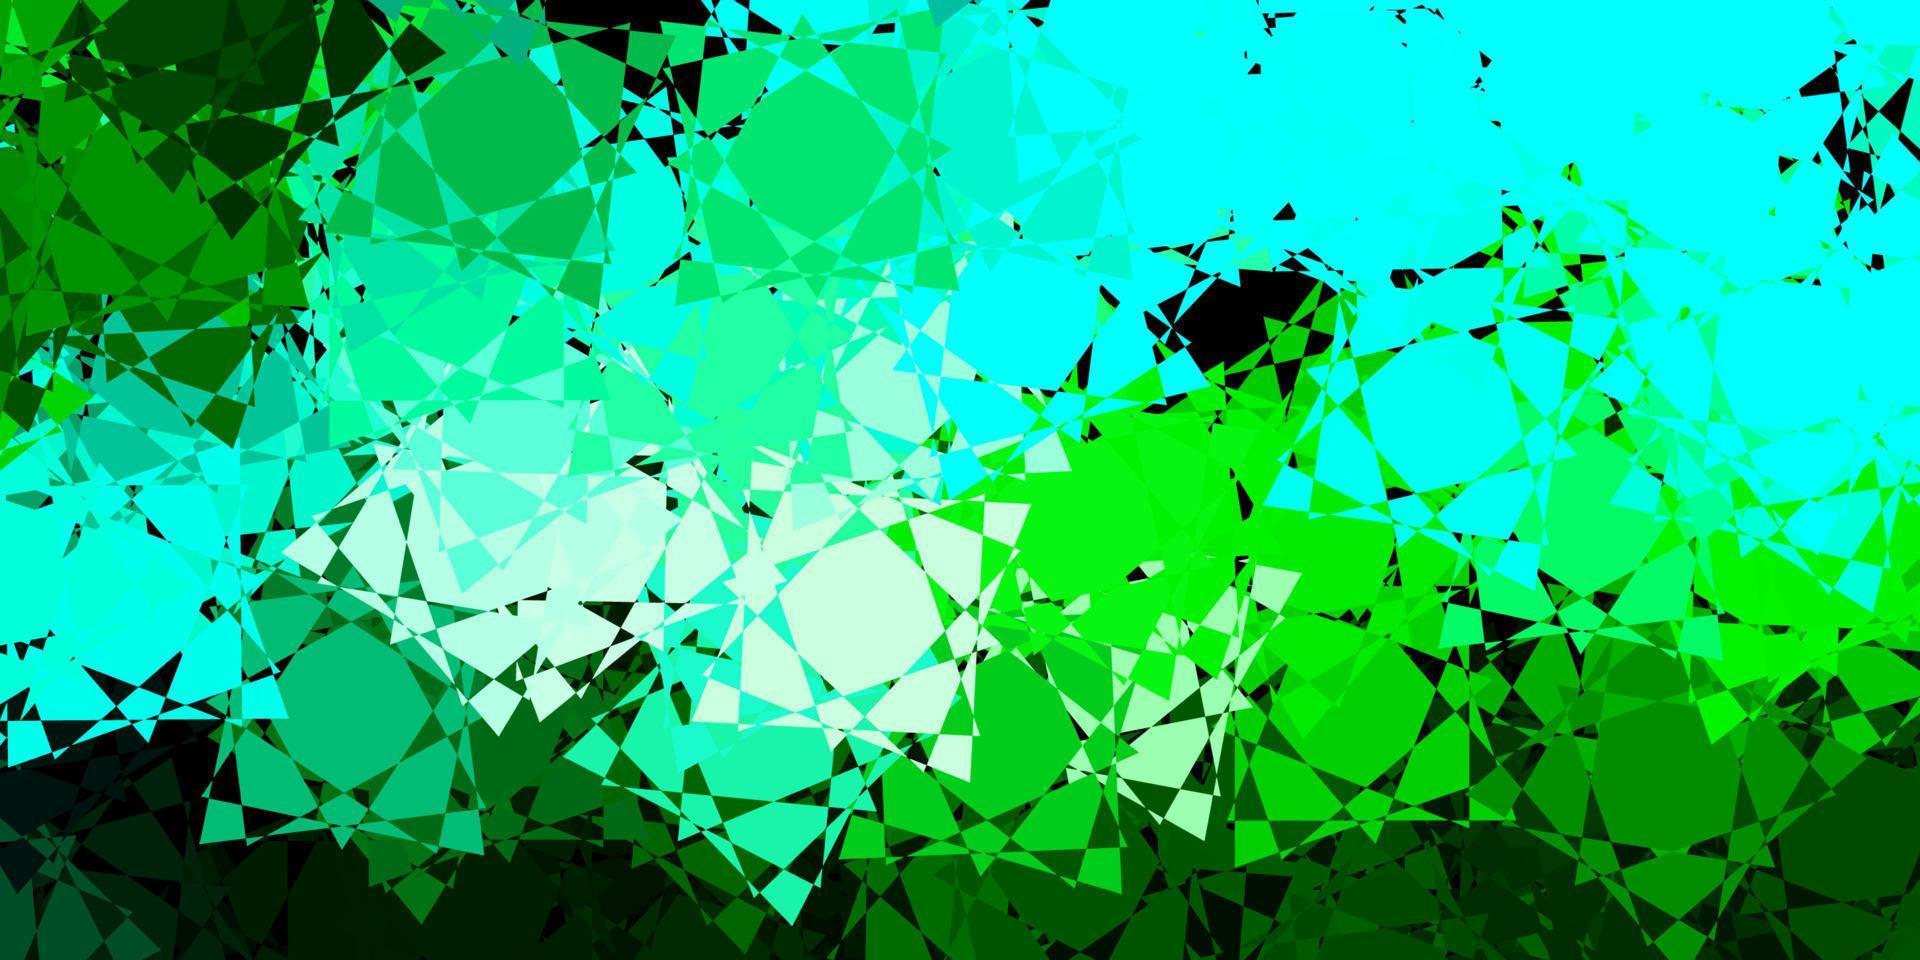 donkerblauwe, groene vectorachtergrond met veelhoekige vormen. vector